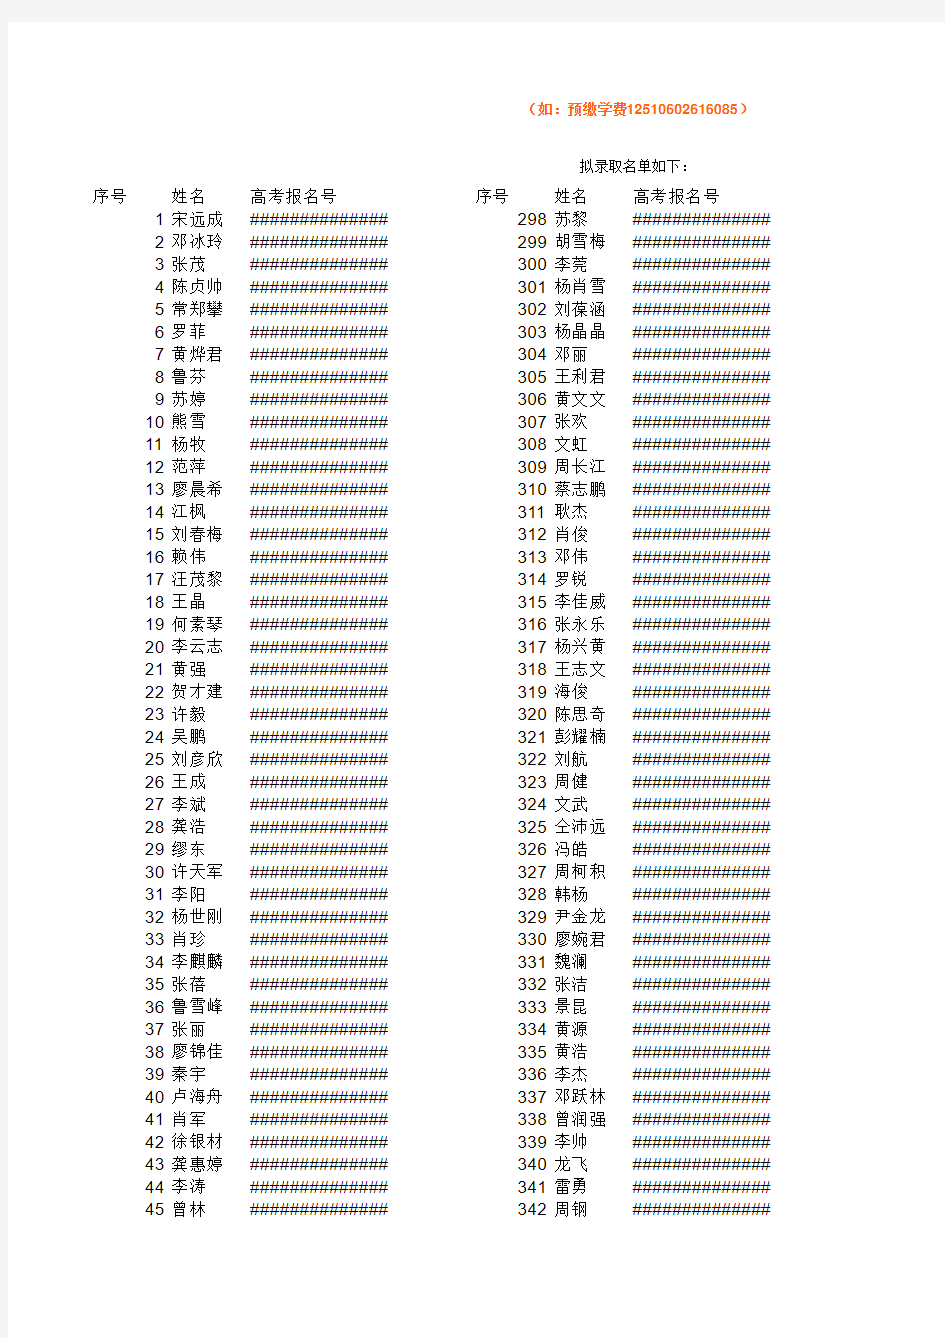 绵阳职业技术学院 2012年单独招生录取名单